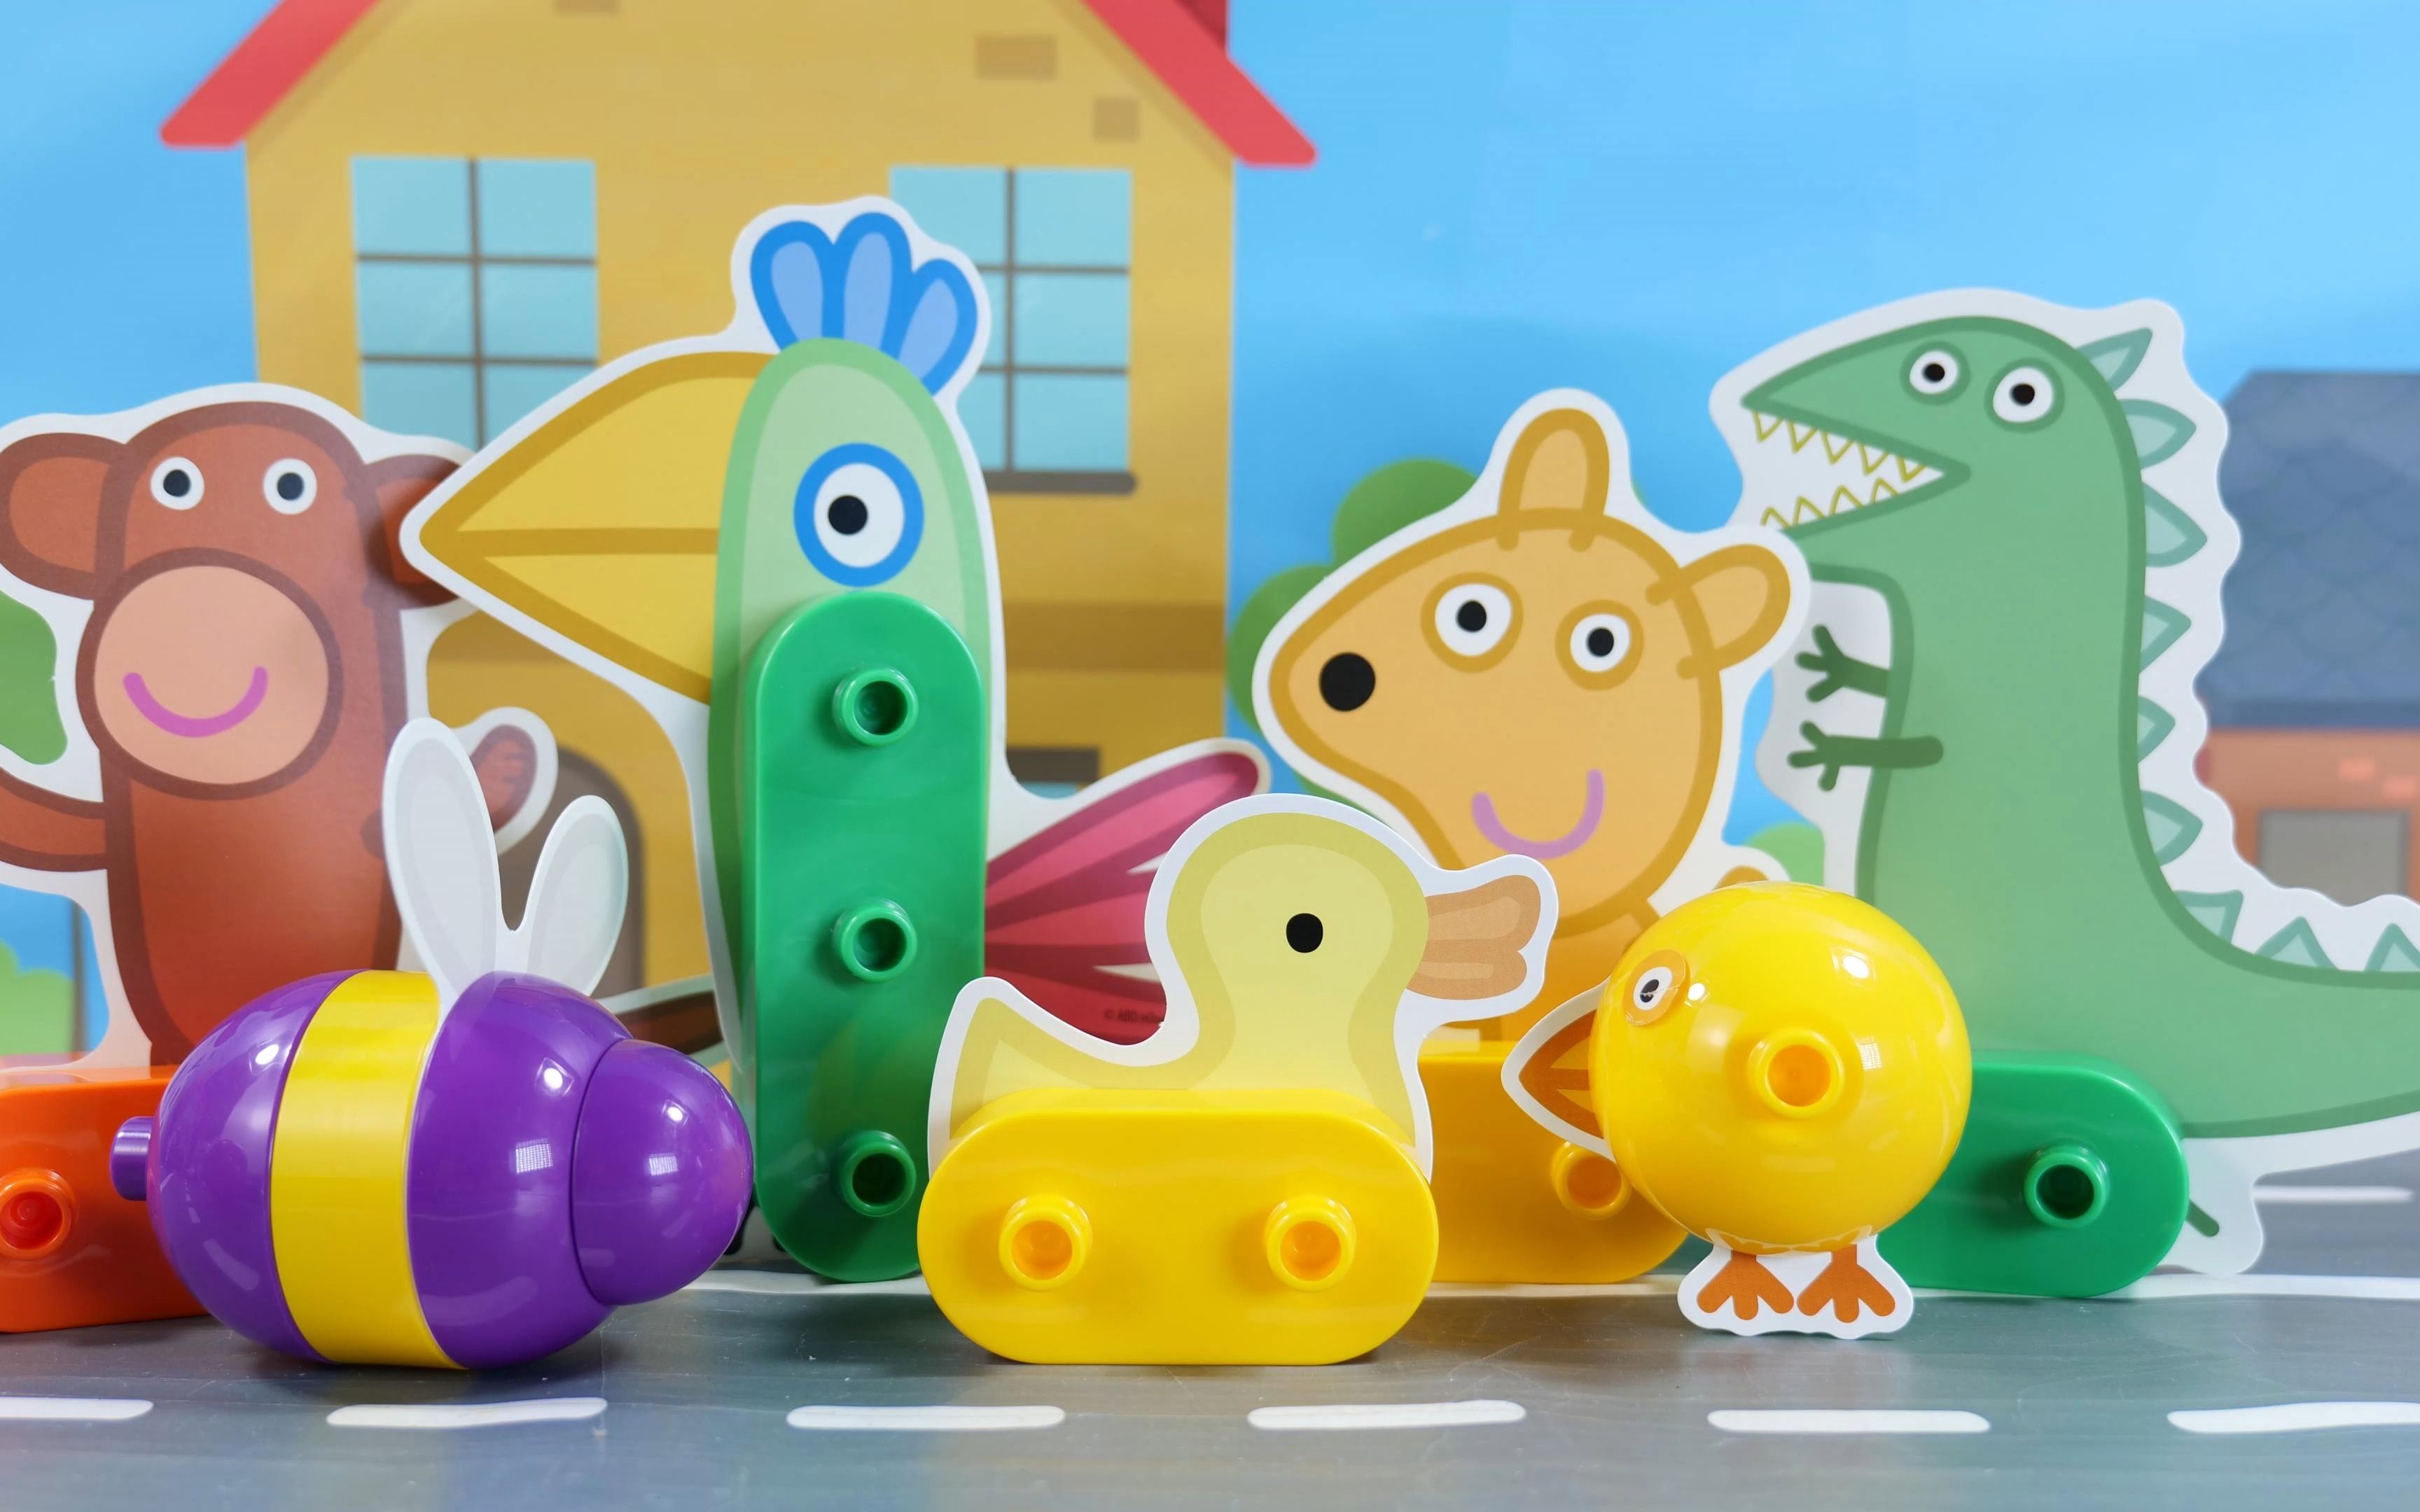 “玩具大联萌”之早教视频:小猪佩奇积木玩具